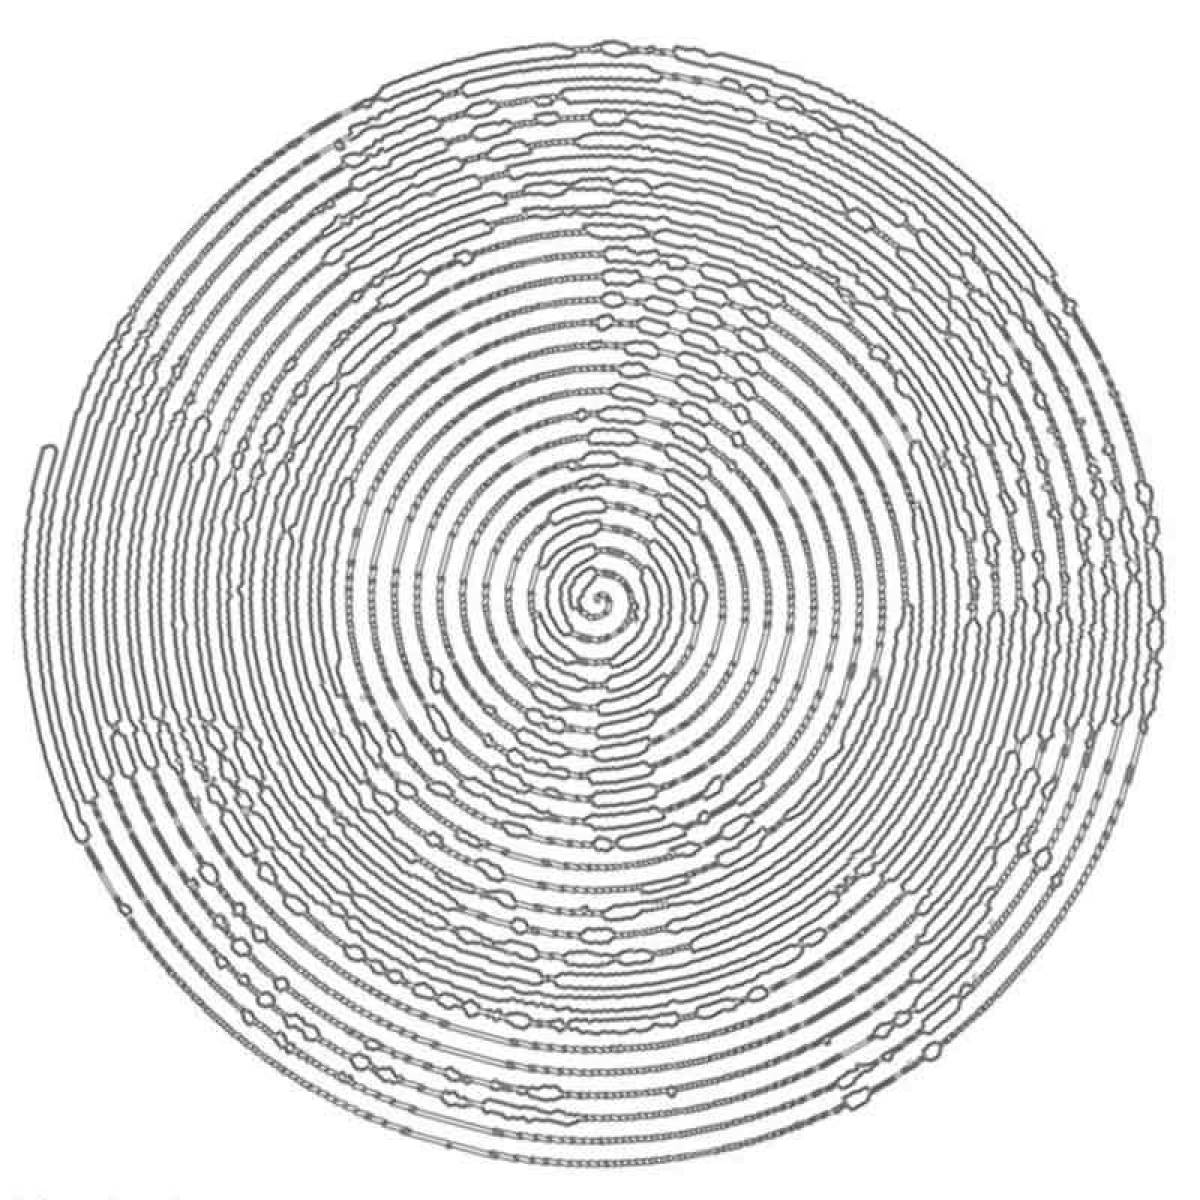 Creative circular spiral coloring